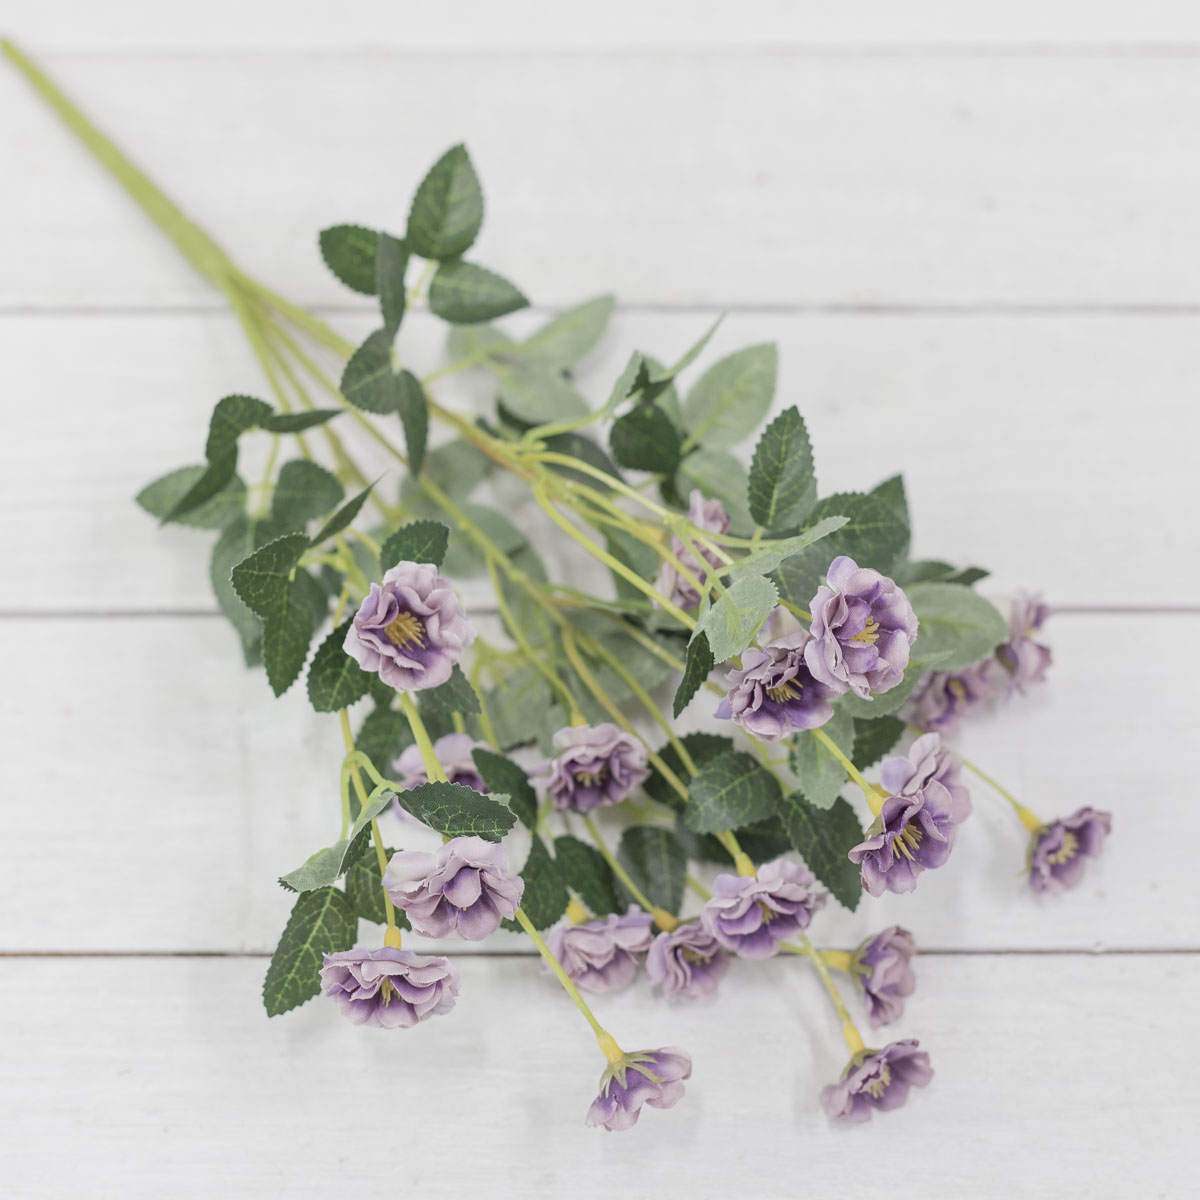 가든로즈 찔레장미 꽃 실크플라워 부쉬 라벤다 테이블에놓은사진